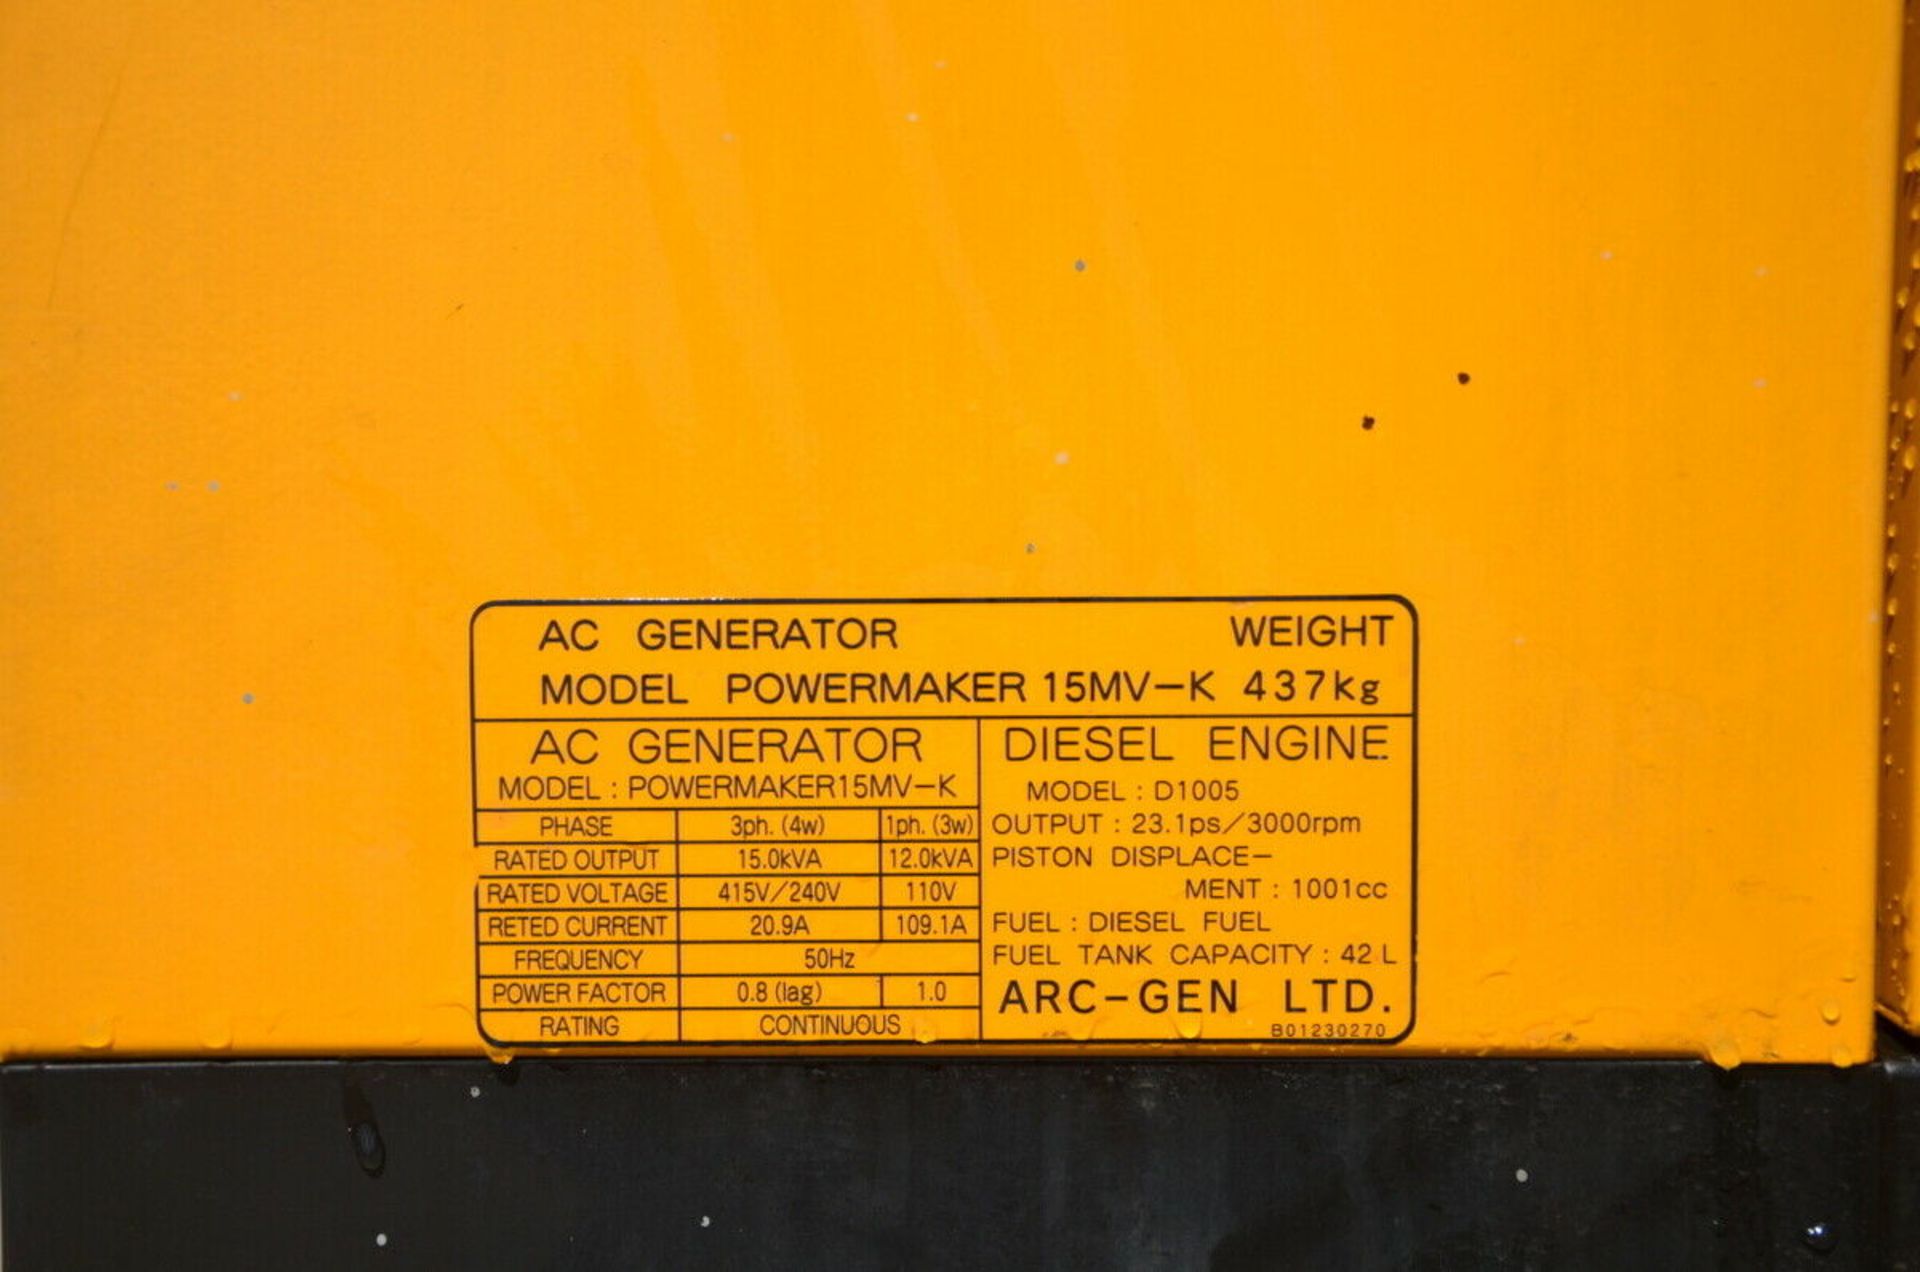 ArcGen Powermaker 15MV-K Generator 2014 - Image 5 of 11